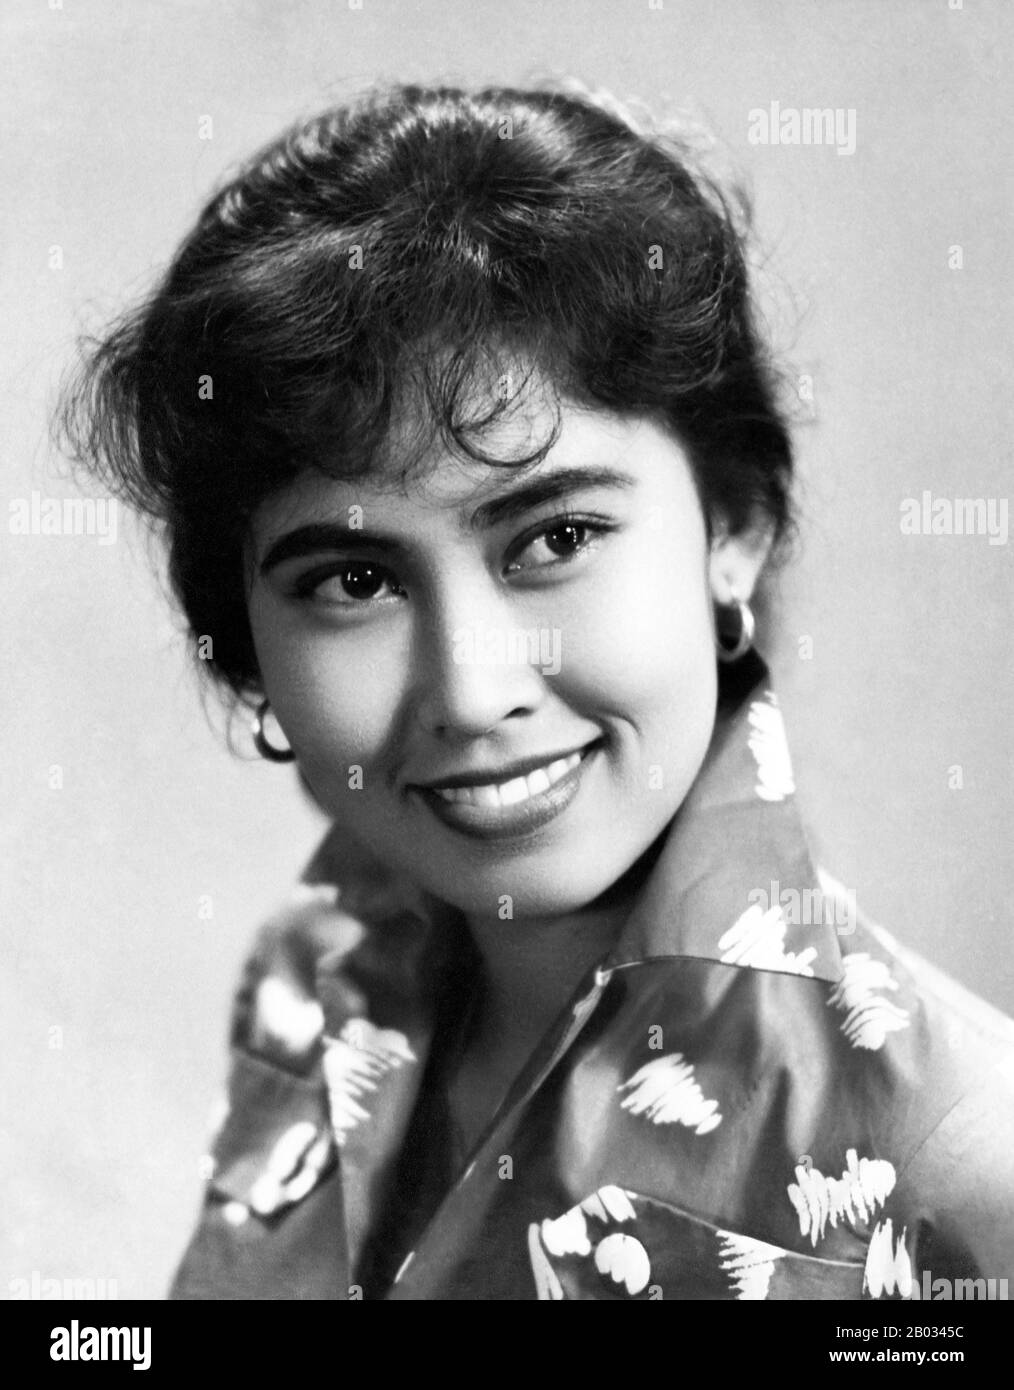 Aminah Tjendrakasih (Aminah Cendrakasih, 29 gennaio 1938 a Magelang, Central Java, è un'attrice indonesiana più conosciuta per la sua apparizione Come Lela nella serie televisiva 'i Doel Anak Sekolahan' (Doel the Schoolchild, 1994–2005). Inizia la sua carriera negli anni adolescenziali, nel 1955 Cendrakasih ebbe il suo primo ruolo di protagonista nel 'Ibu dan Parr'i' del 1955 (madre e Figlia). Da allora ha agito in più di un centinaio di lungometraggi. Nel 2012 e nel 2013 ha ricevuto i Lifetime Achievement Awards rispettivamente dal Bandung Film Festival e dall'Indonesian Movie Awards. Foto Stock